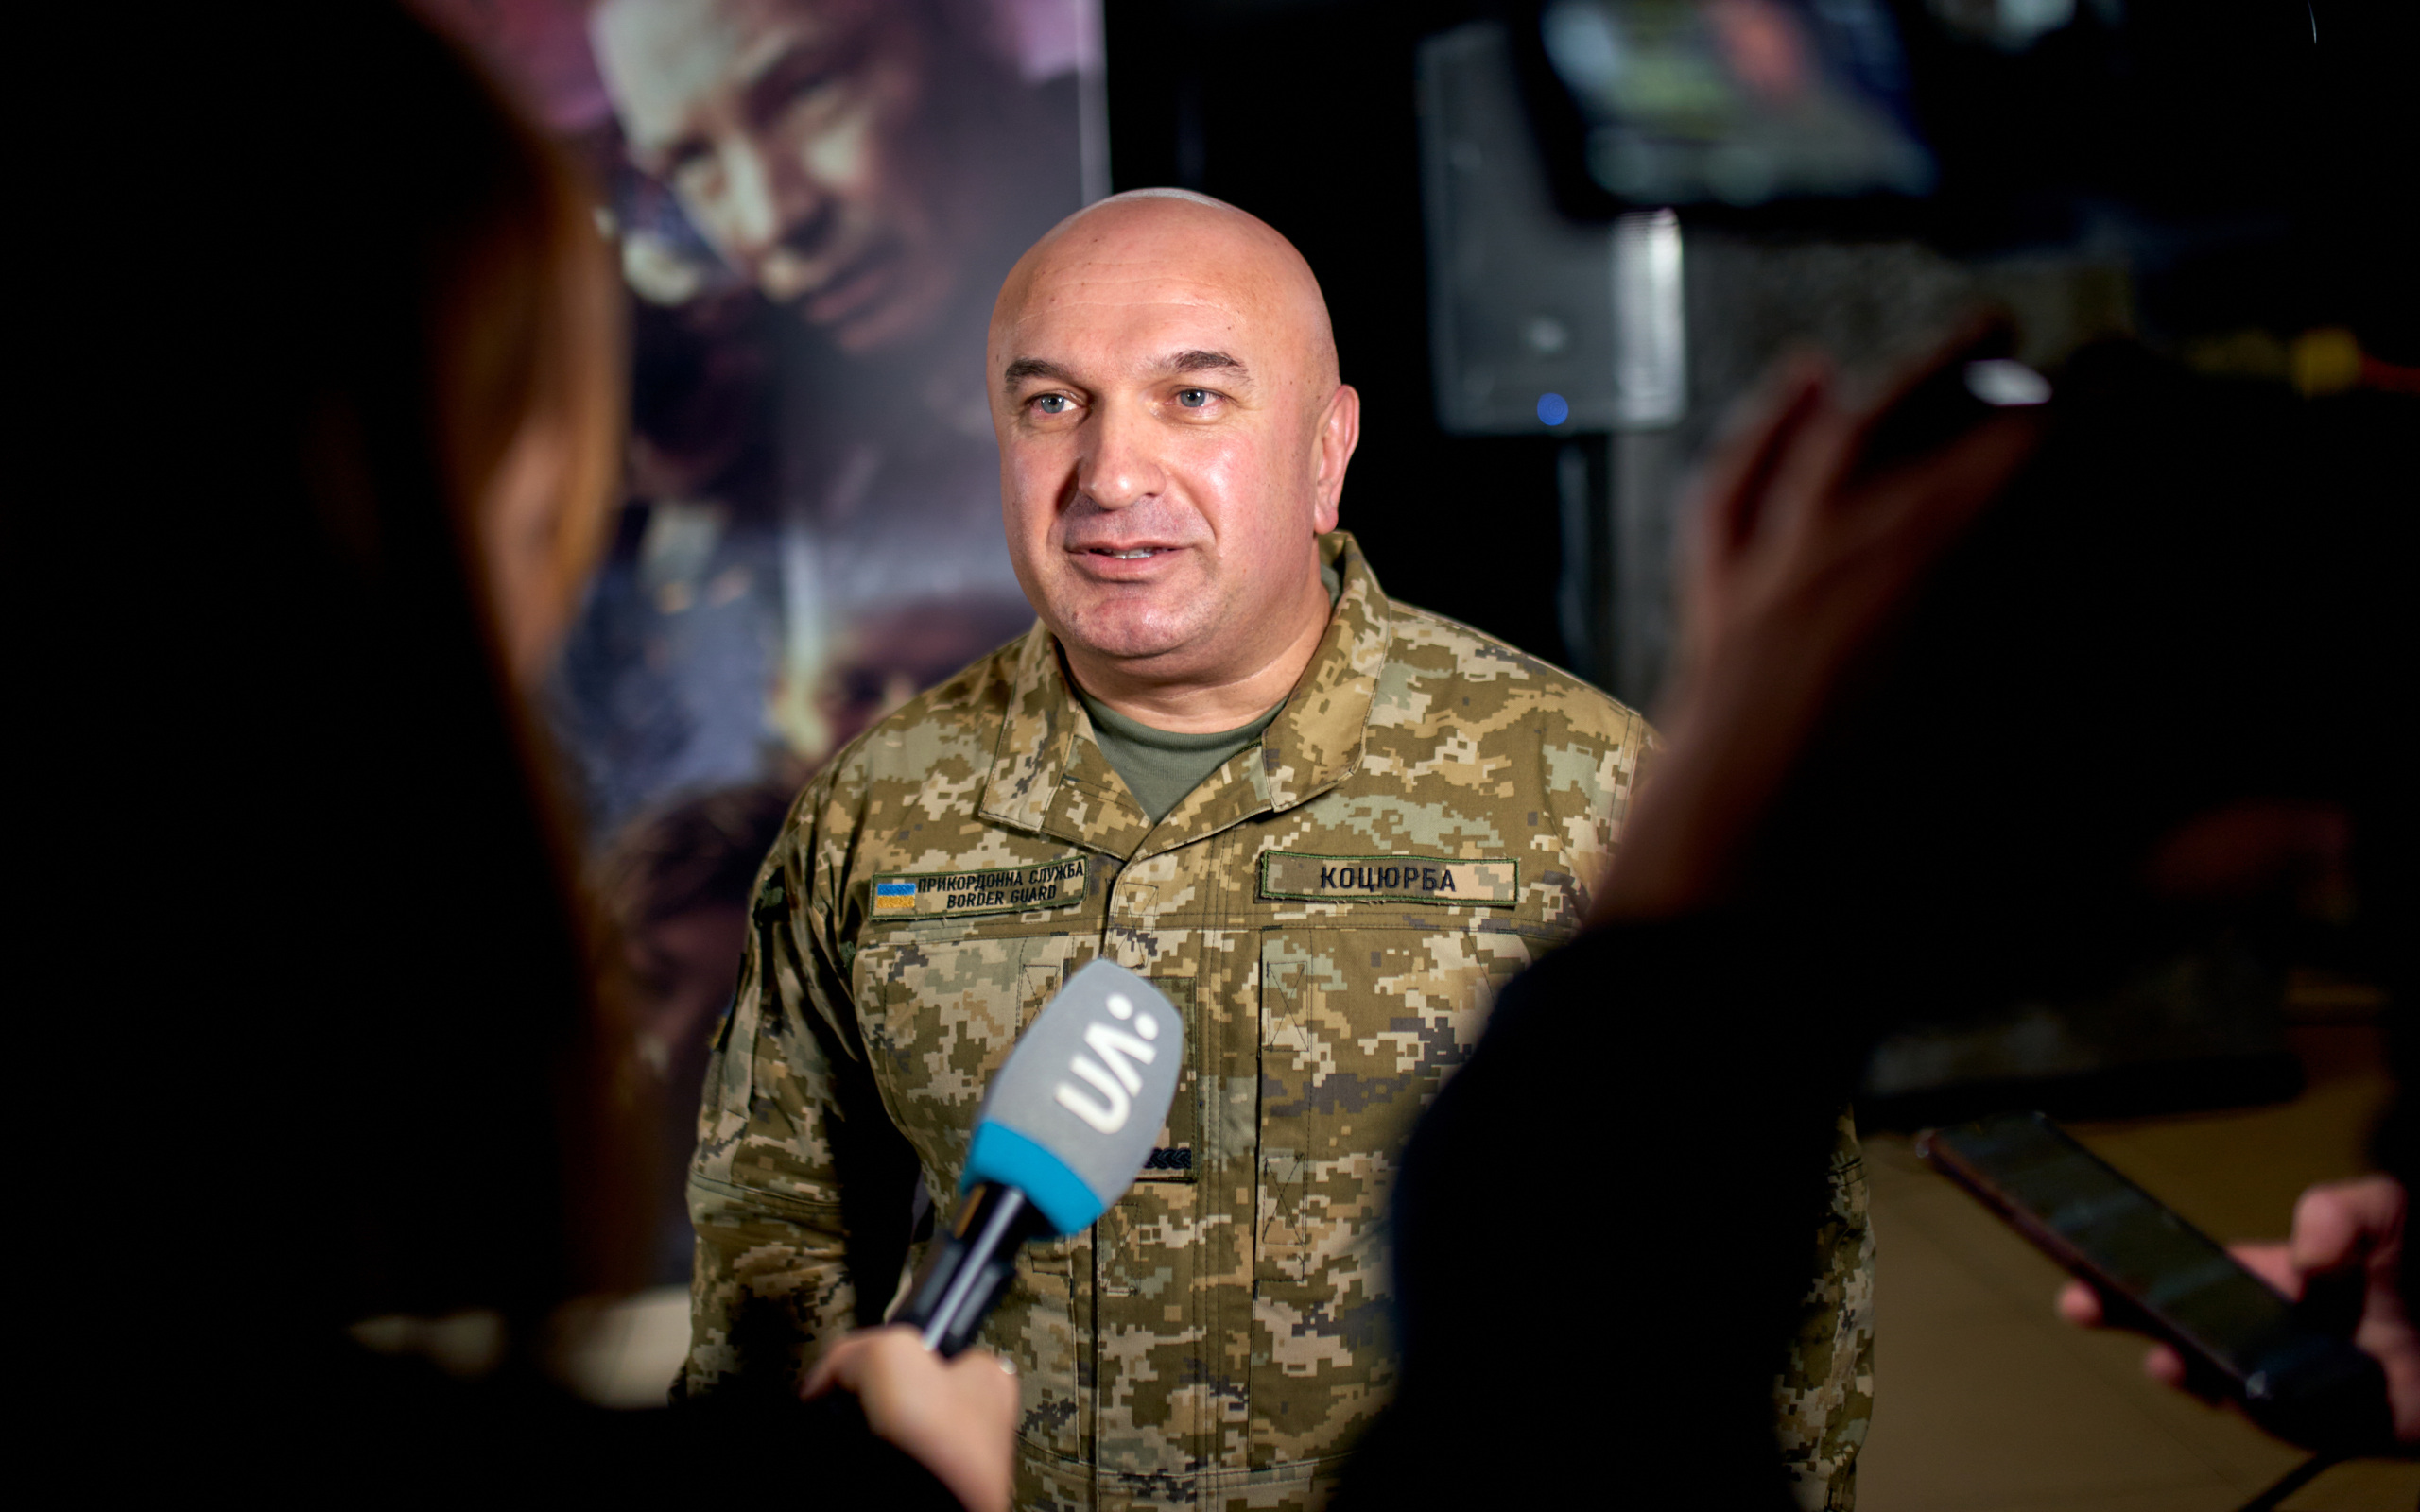 Прем’єрний показ воєнної екшн-драми «Мирний–21» про історію луганських прикордонників